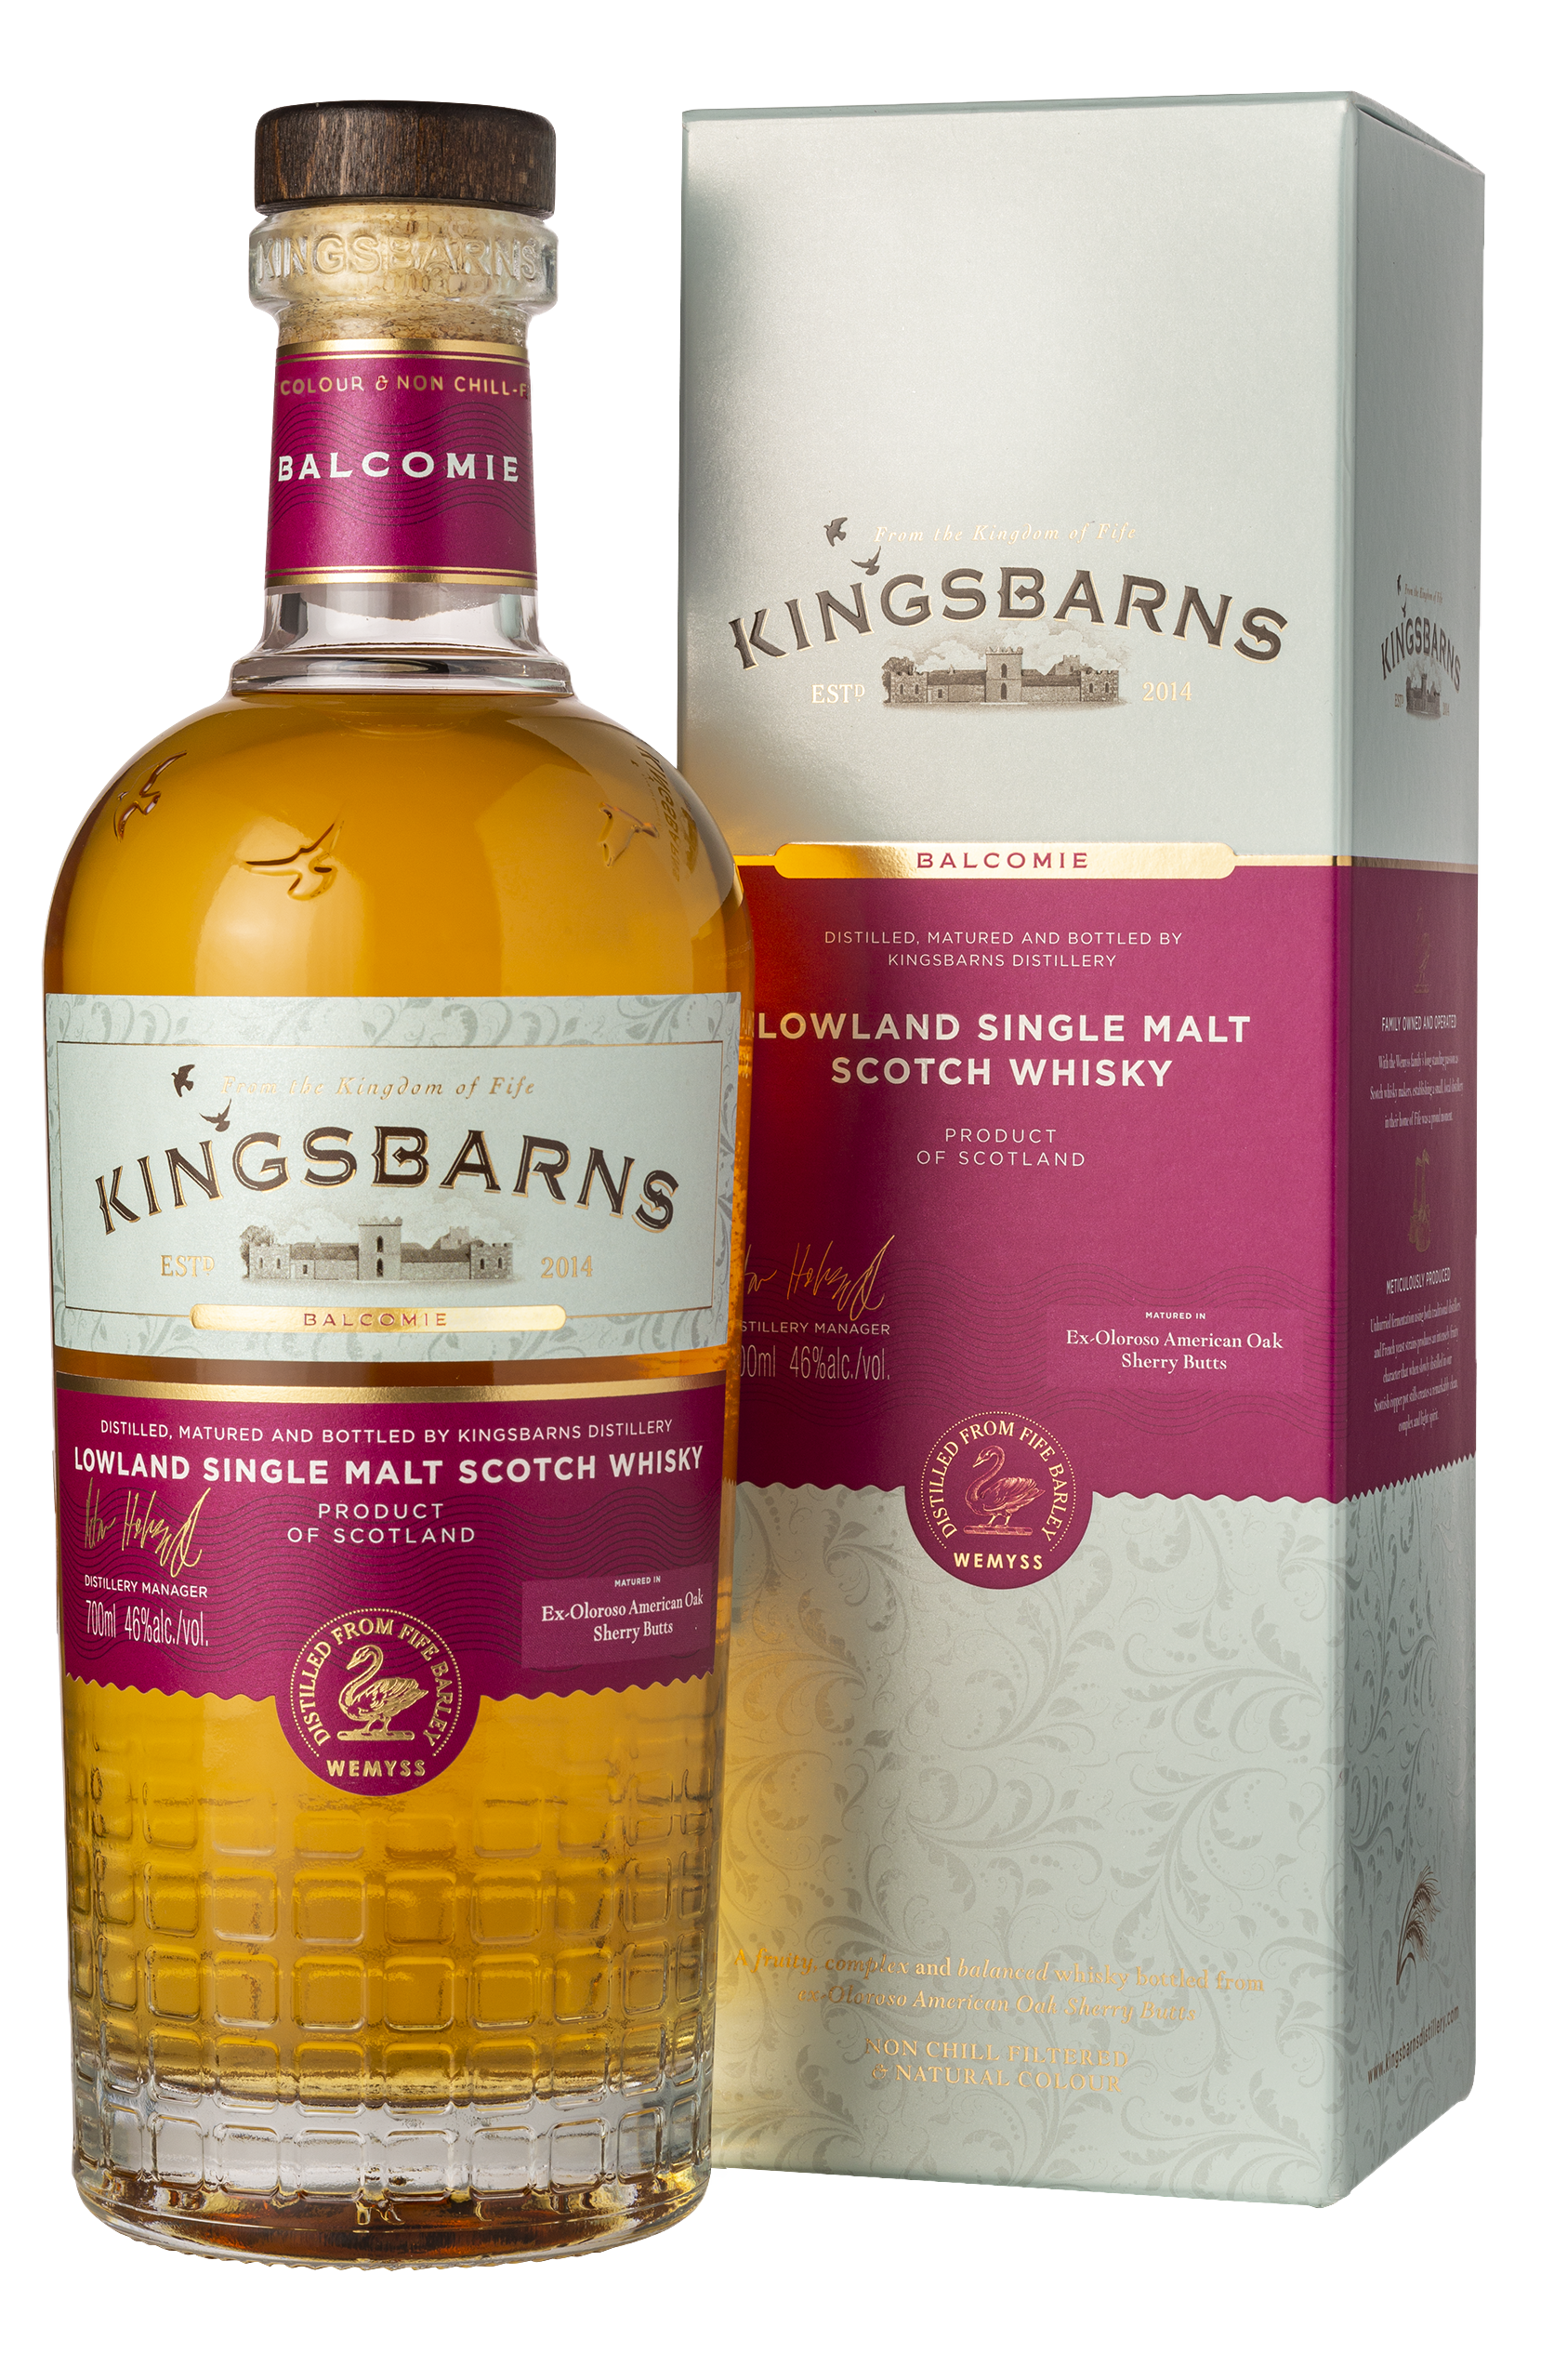 Kingsbarns "Balcomie"  Lowland Single Malt Scotch Whisky